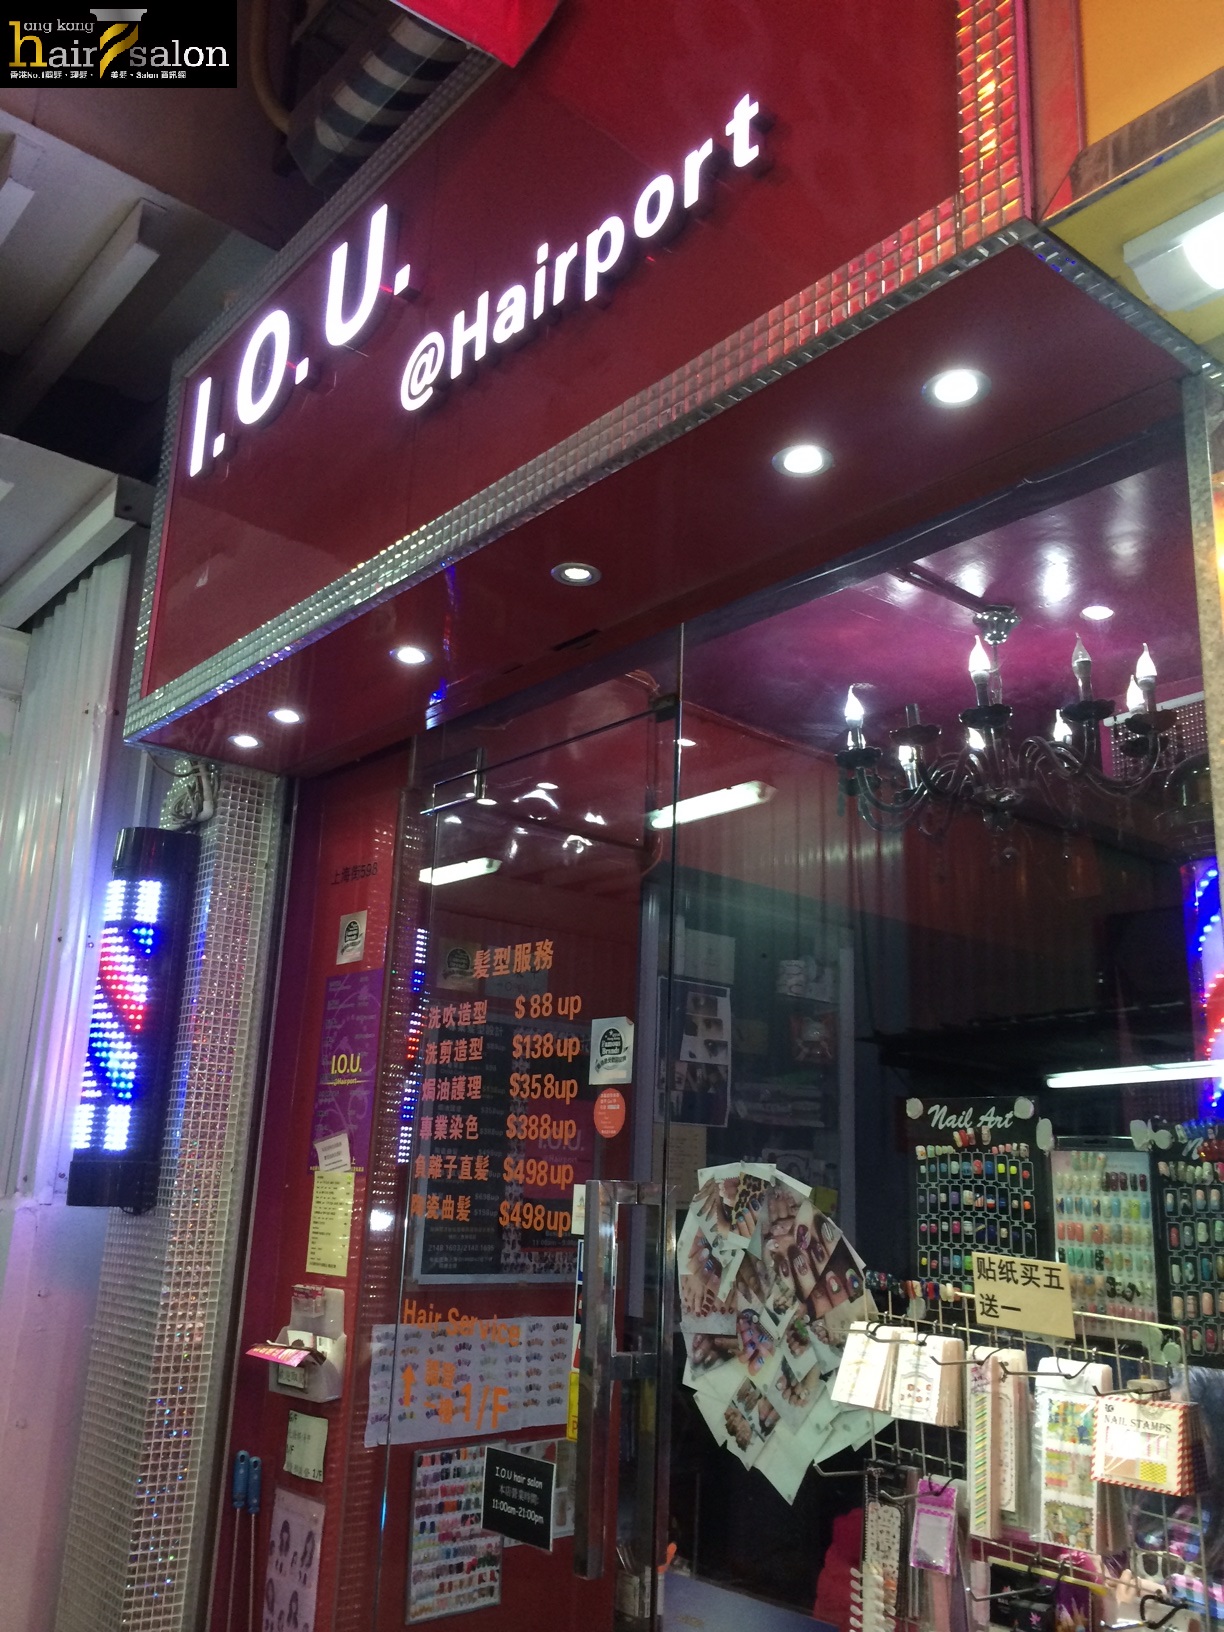 髮型屋Salon集團IOU Hair Salon (上海街) @ 香港美髮網 HK Hair Salon